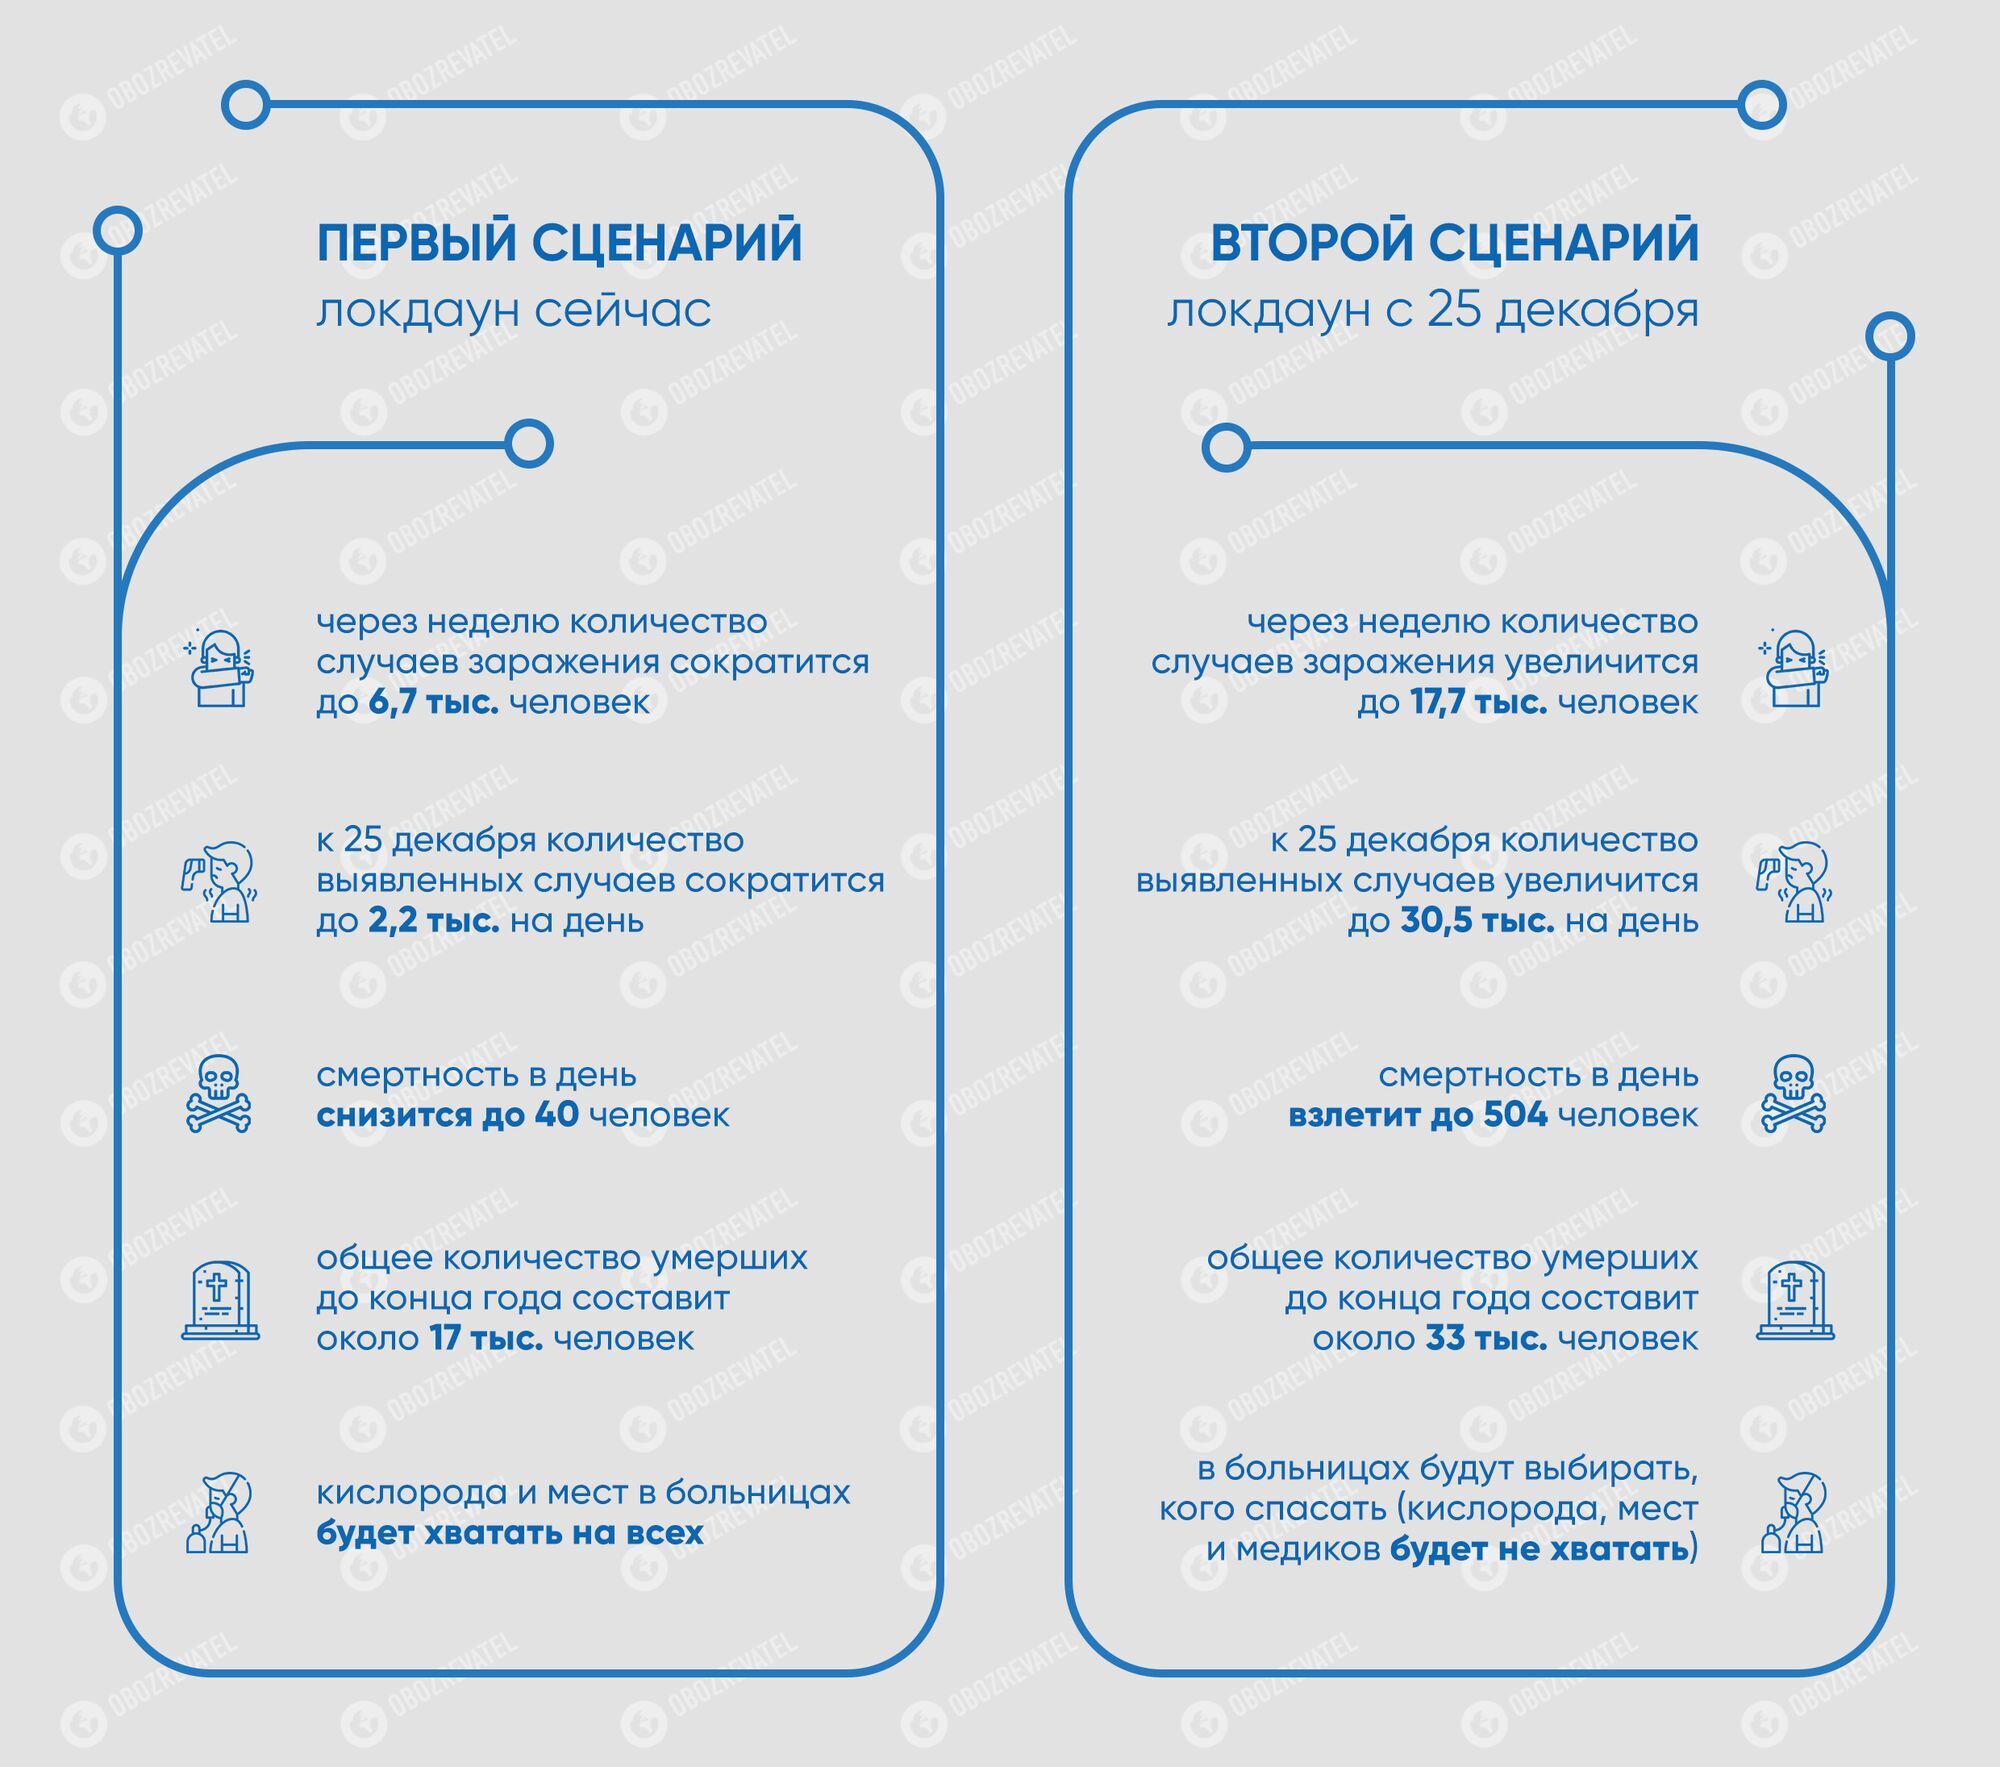 Два сценария развития ситуации в Украине